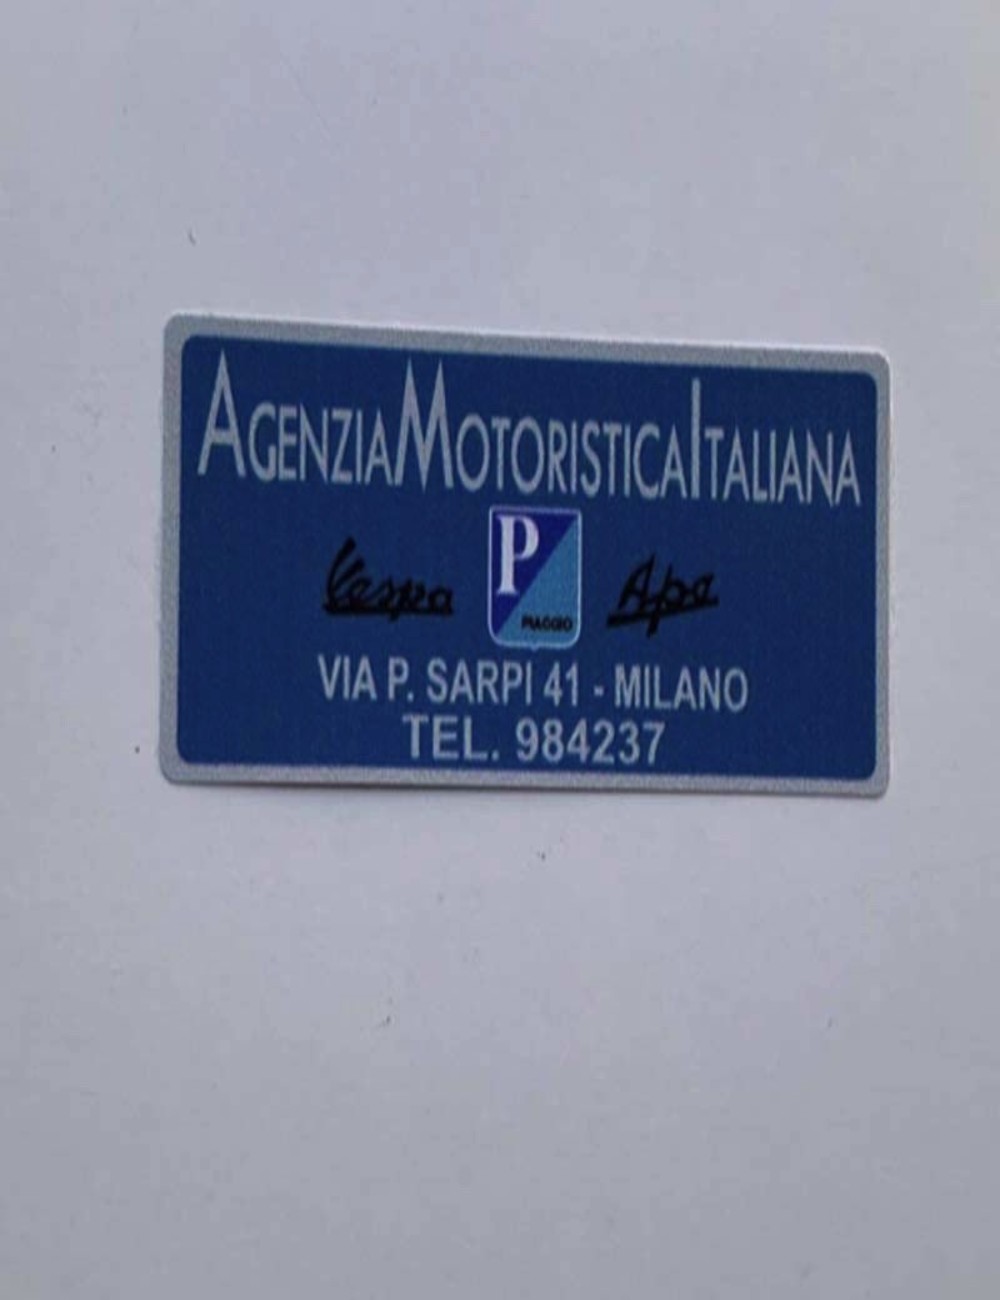 Adesivo Agenzia Motoristica Italiana. Dimensioni: 5 cm x 2,5 cm